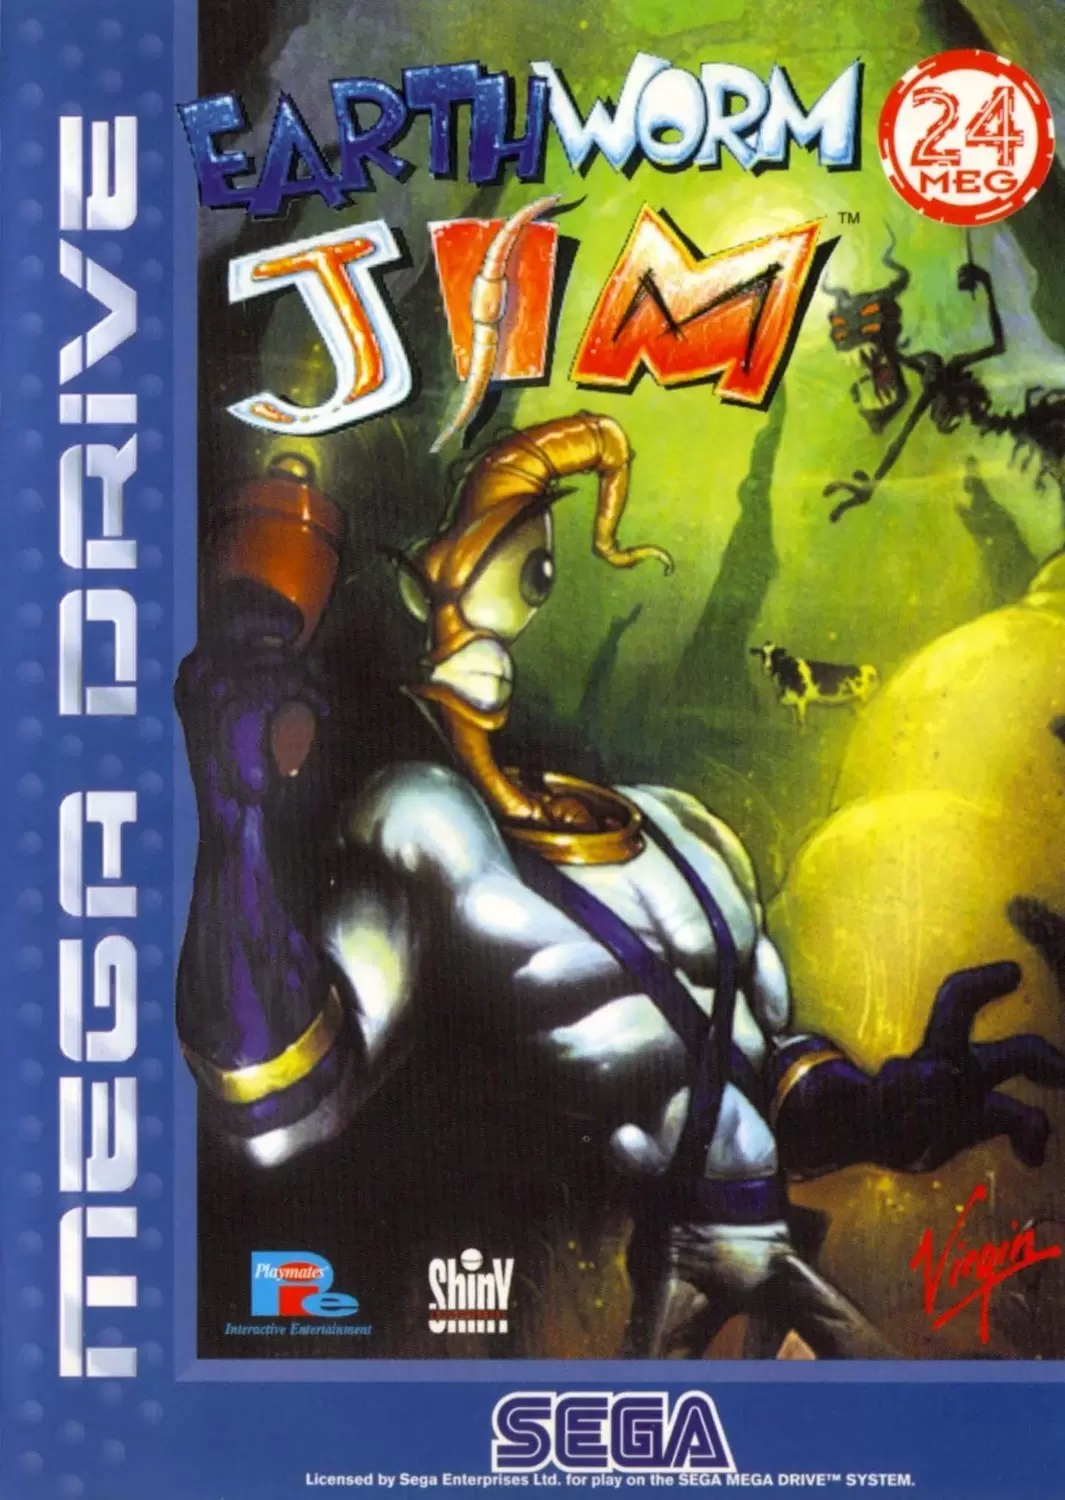 Sega Genesis Games - Earthworm Jim